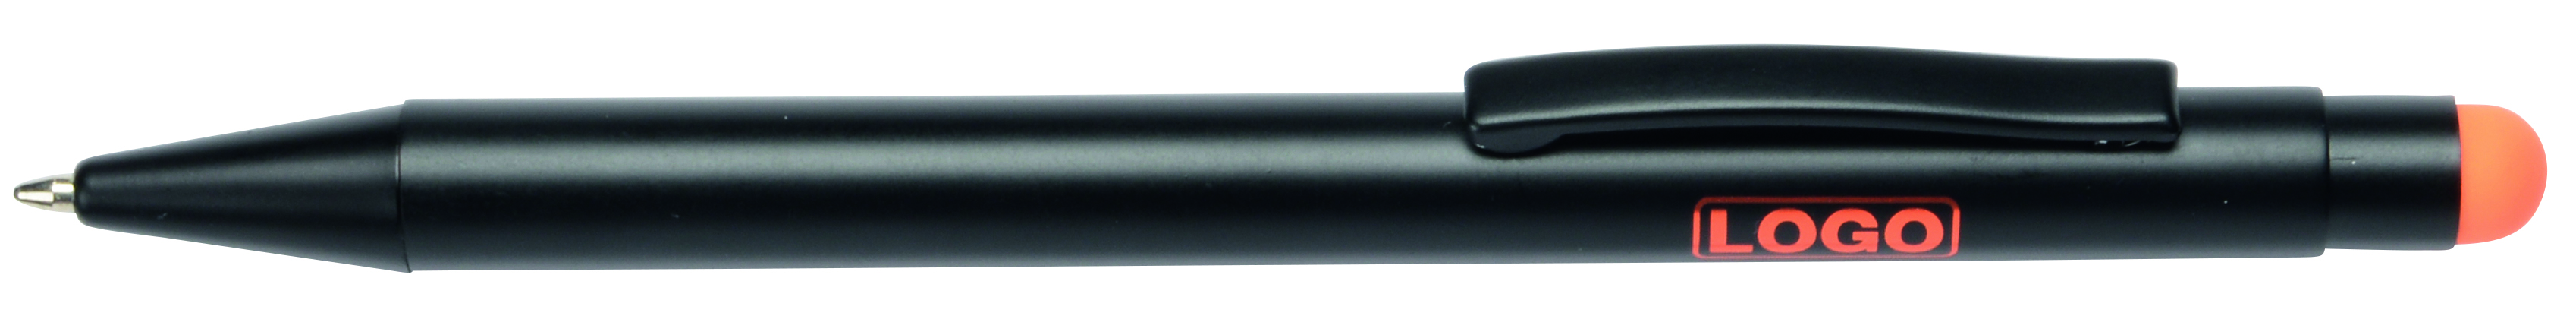 Alu-Kugelschreiber BLACK BEAUTY 56-1101762